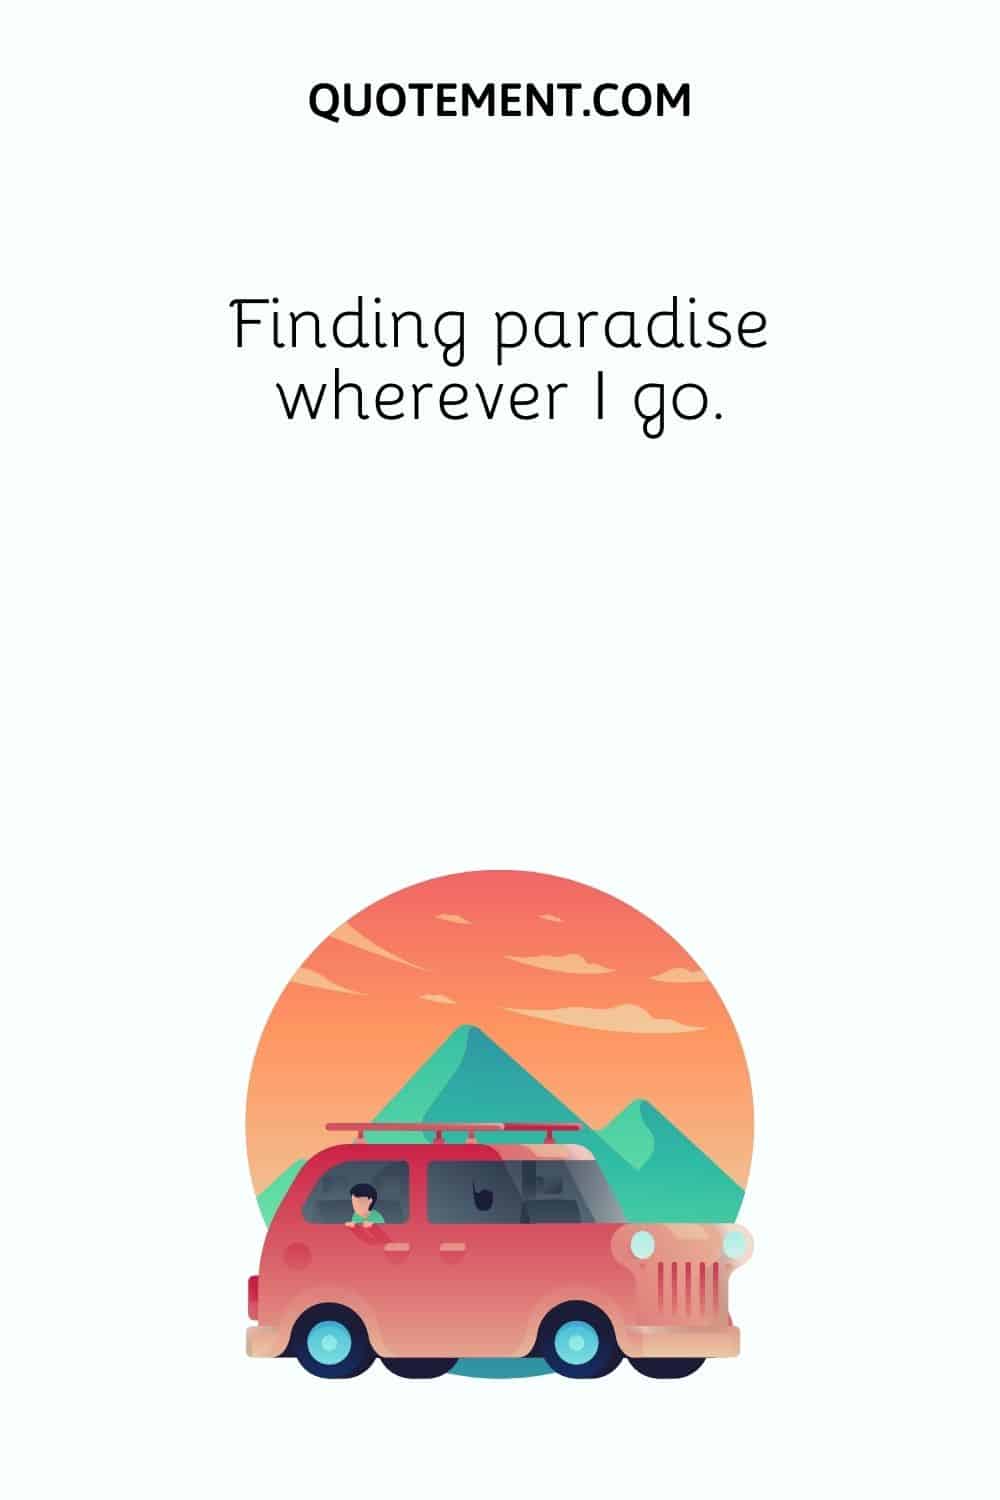 Finding paradise wherever I go